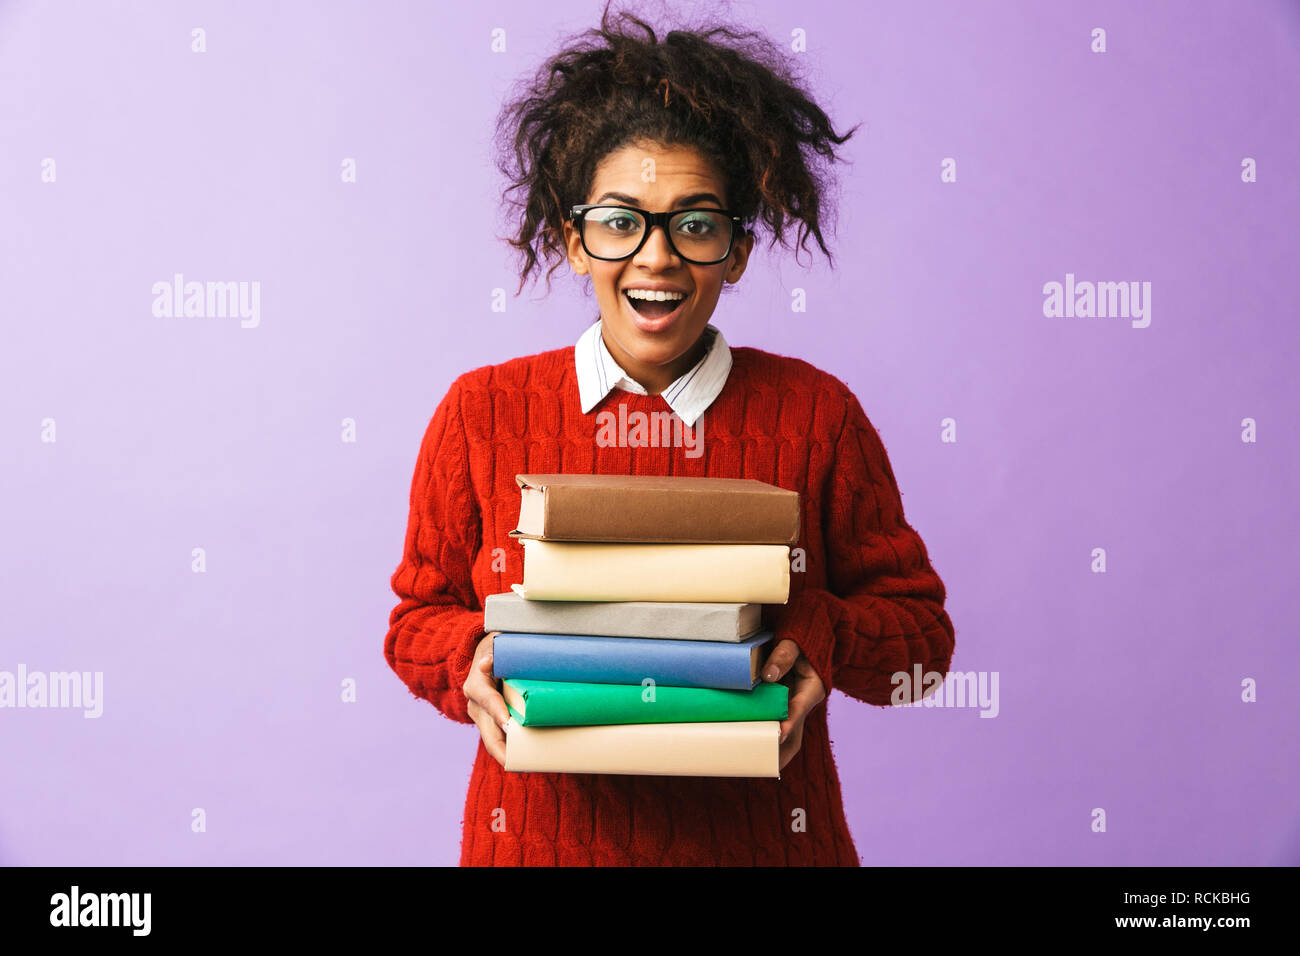 Americano africano ragazza sorridente in uniforme scolastica tenendo il mazzo di libri isolate su sfondo viola Foto Stock